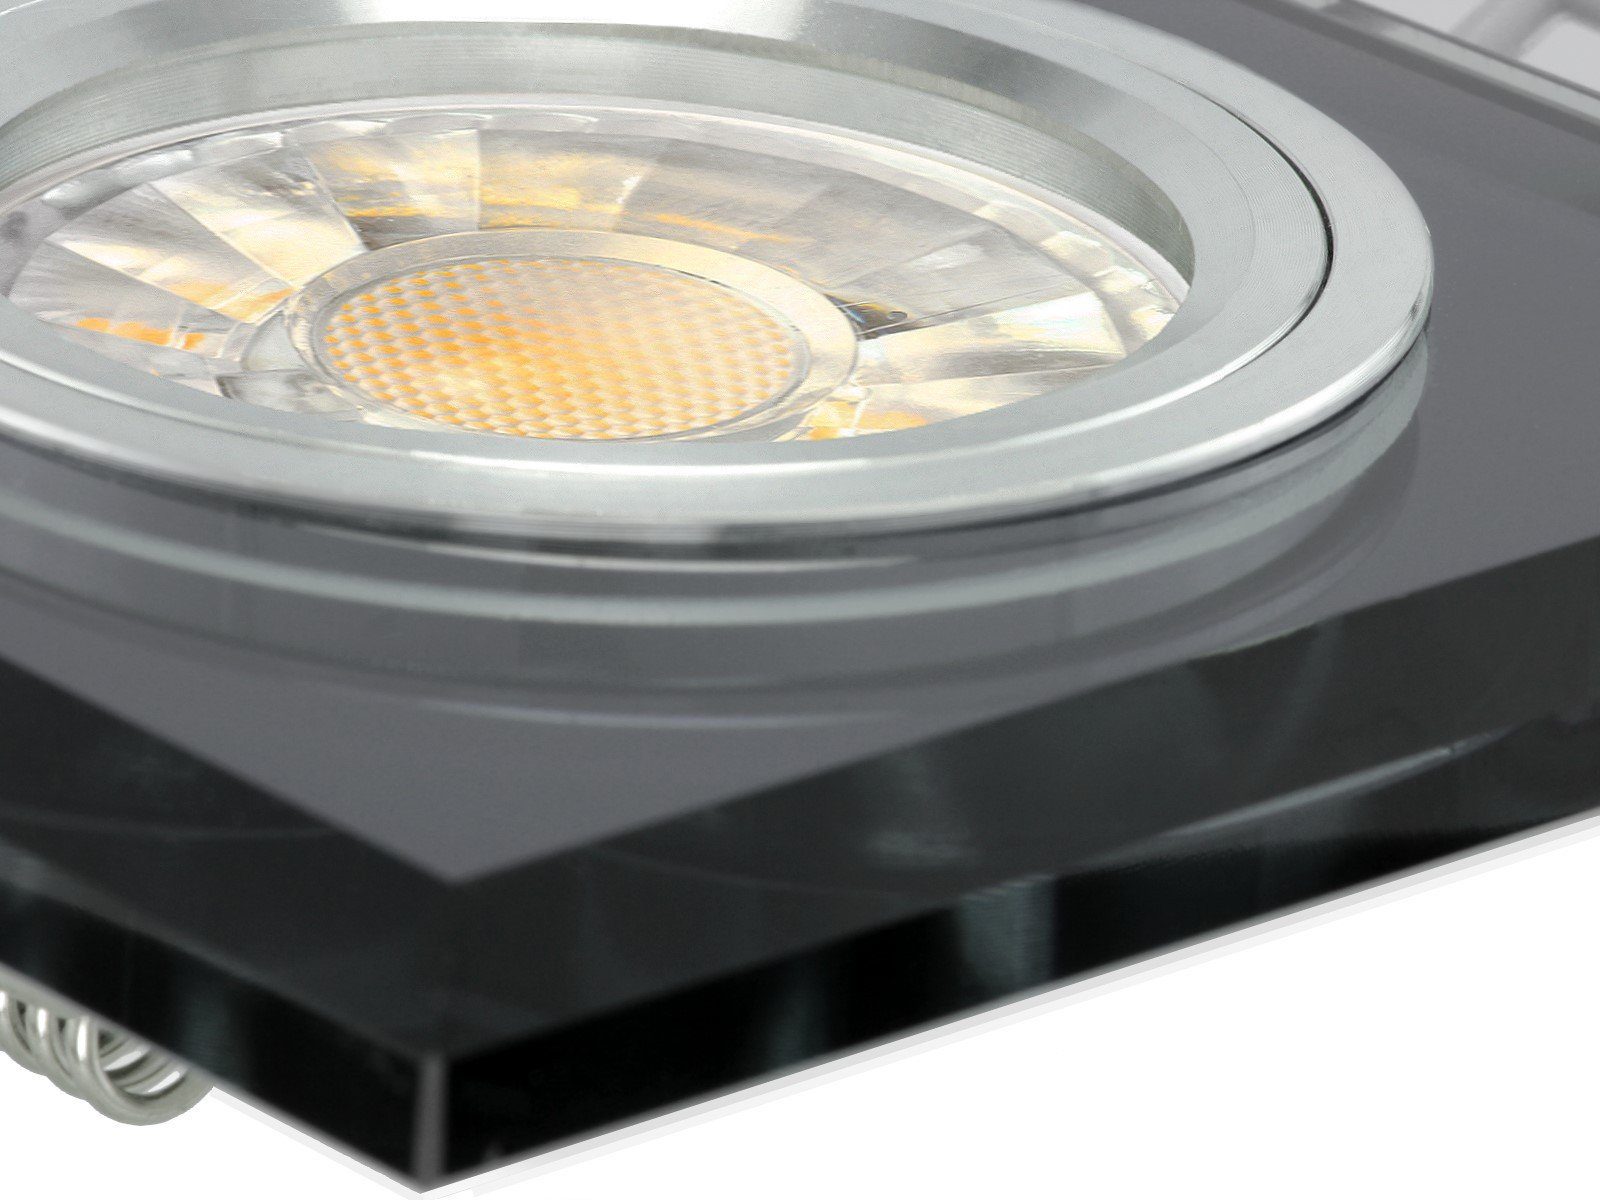 SSC-LUXon spiegelnd, quadratisch, Warmweiß LED Einbaustrahler Alu Innenring, Glas LED-Einbaustrahler schwarz